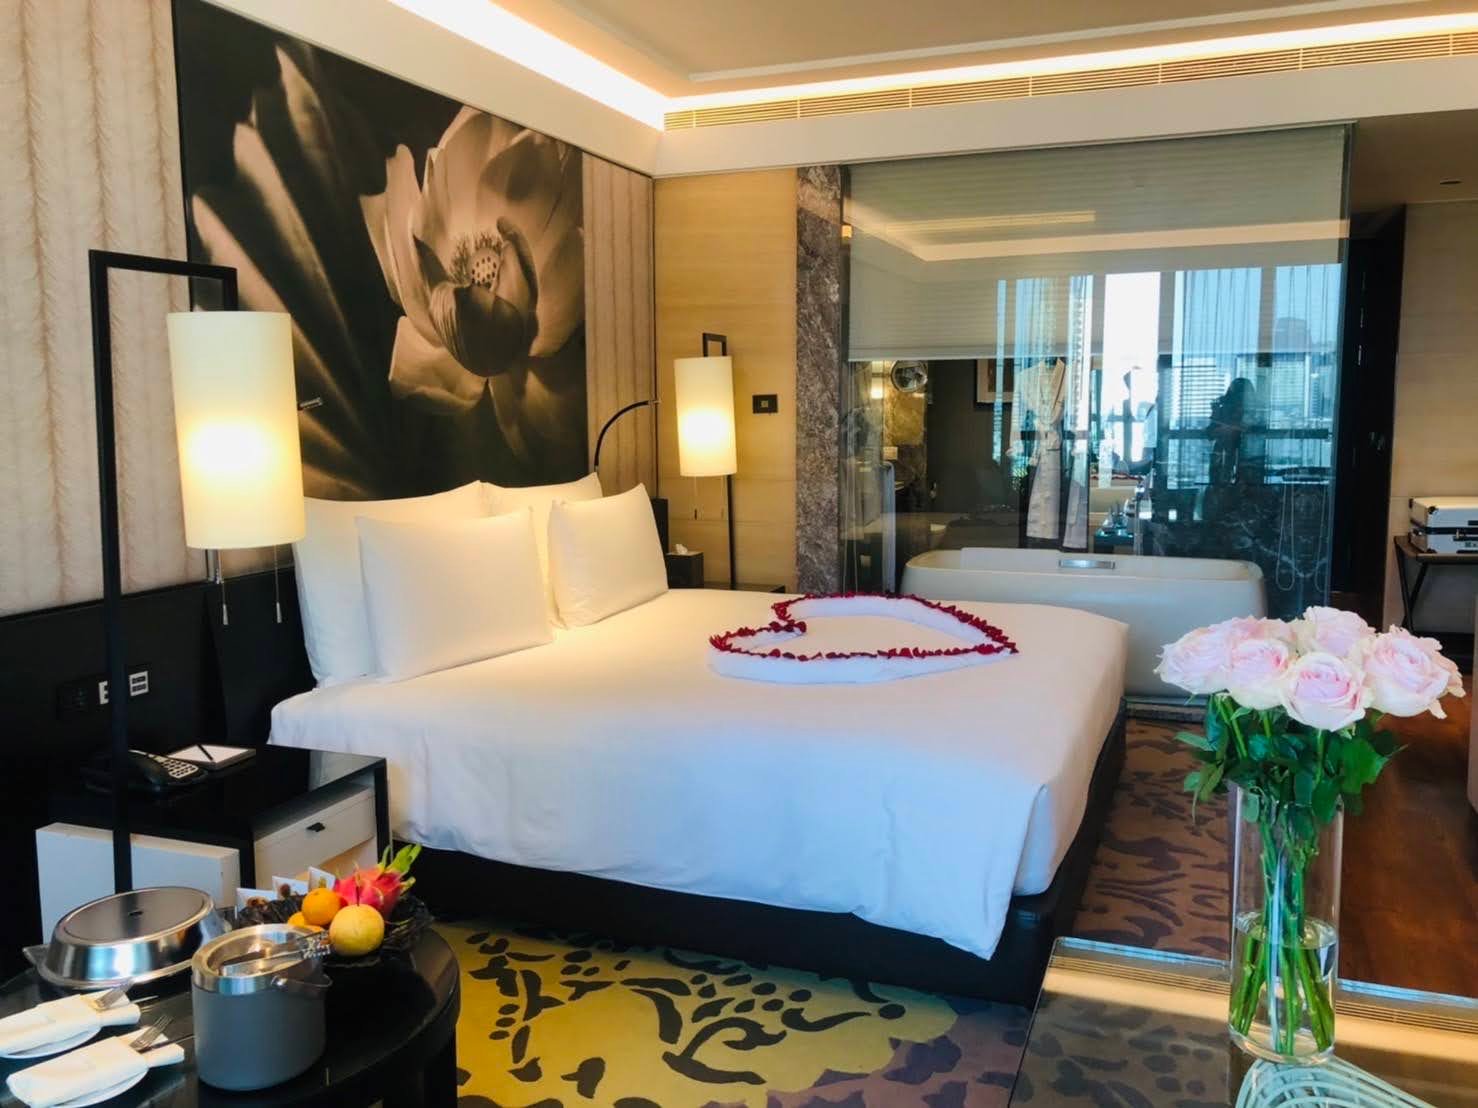 โรงแรมสุดหรูติด 'สยามพารากอน' กับห้องพักคืนละ 200,000! | Siam Kempinski  Hotel Bangkok